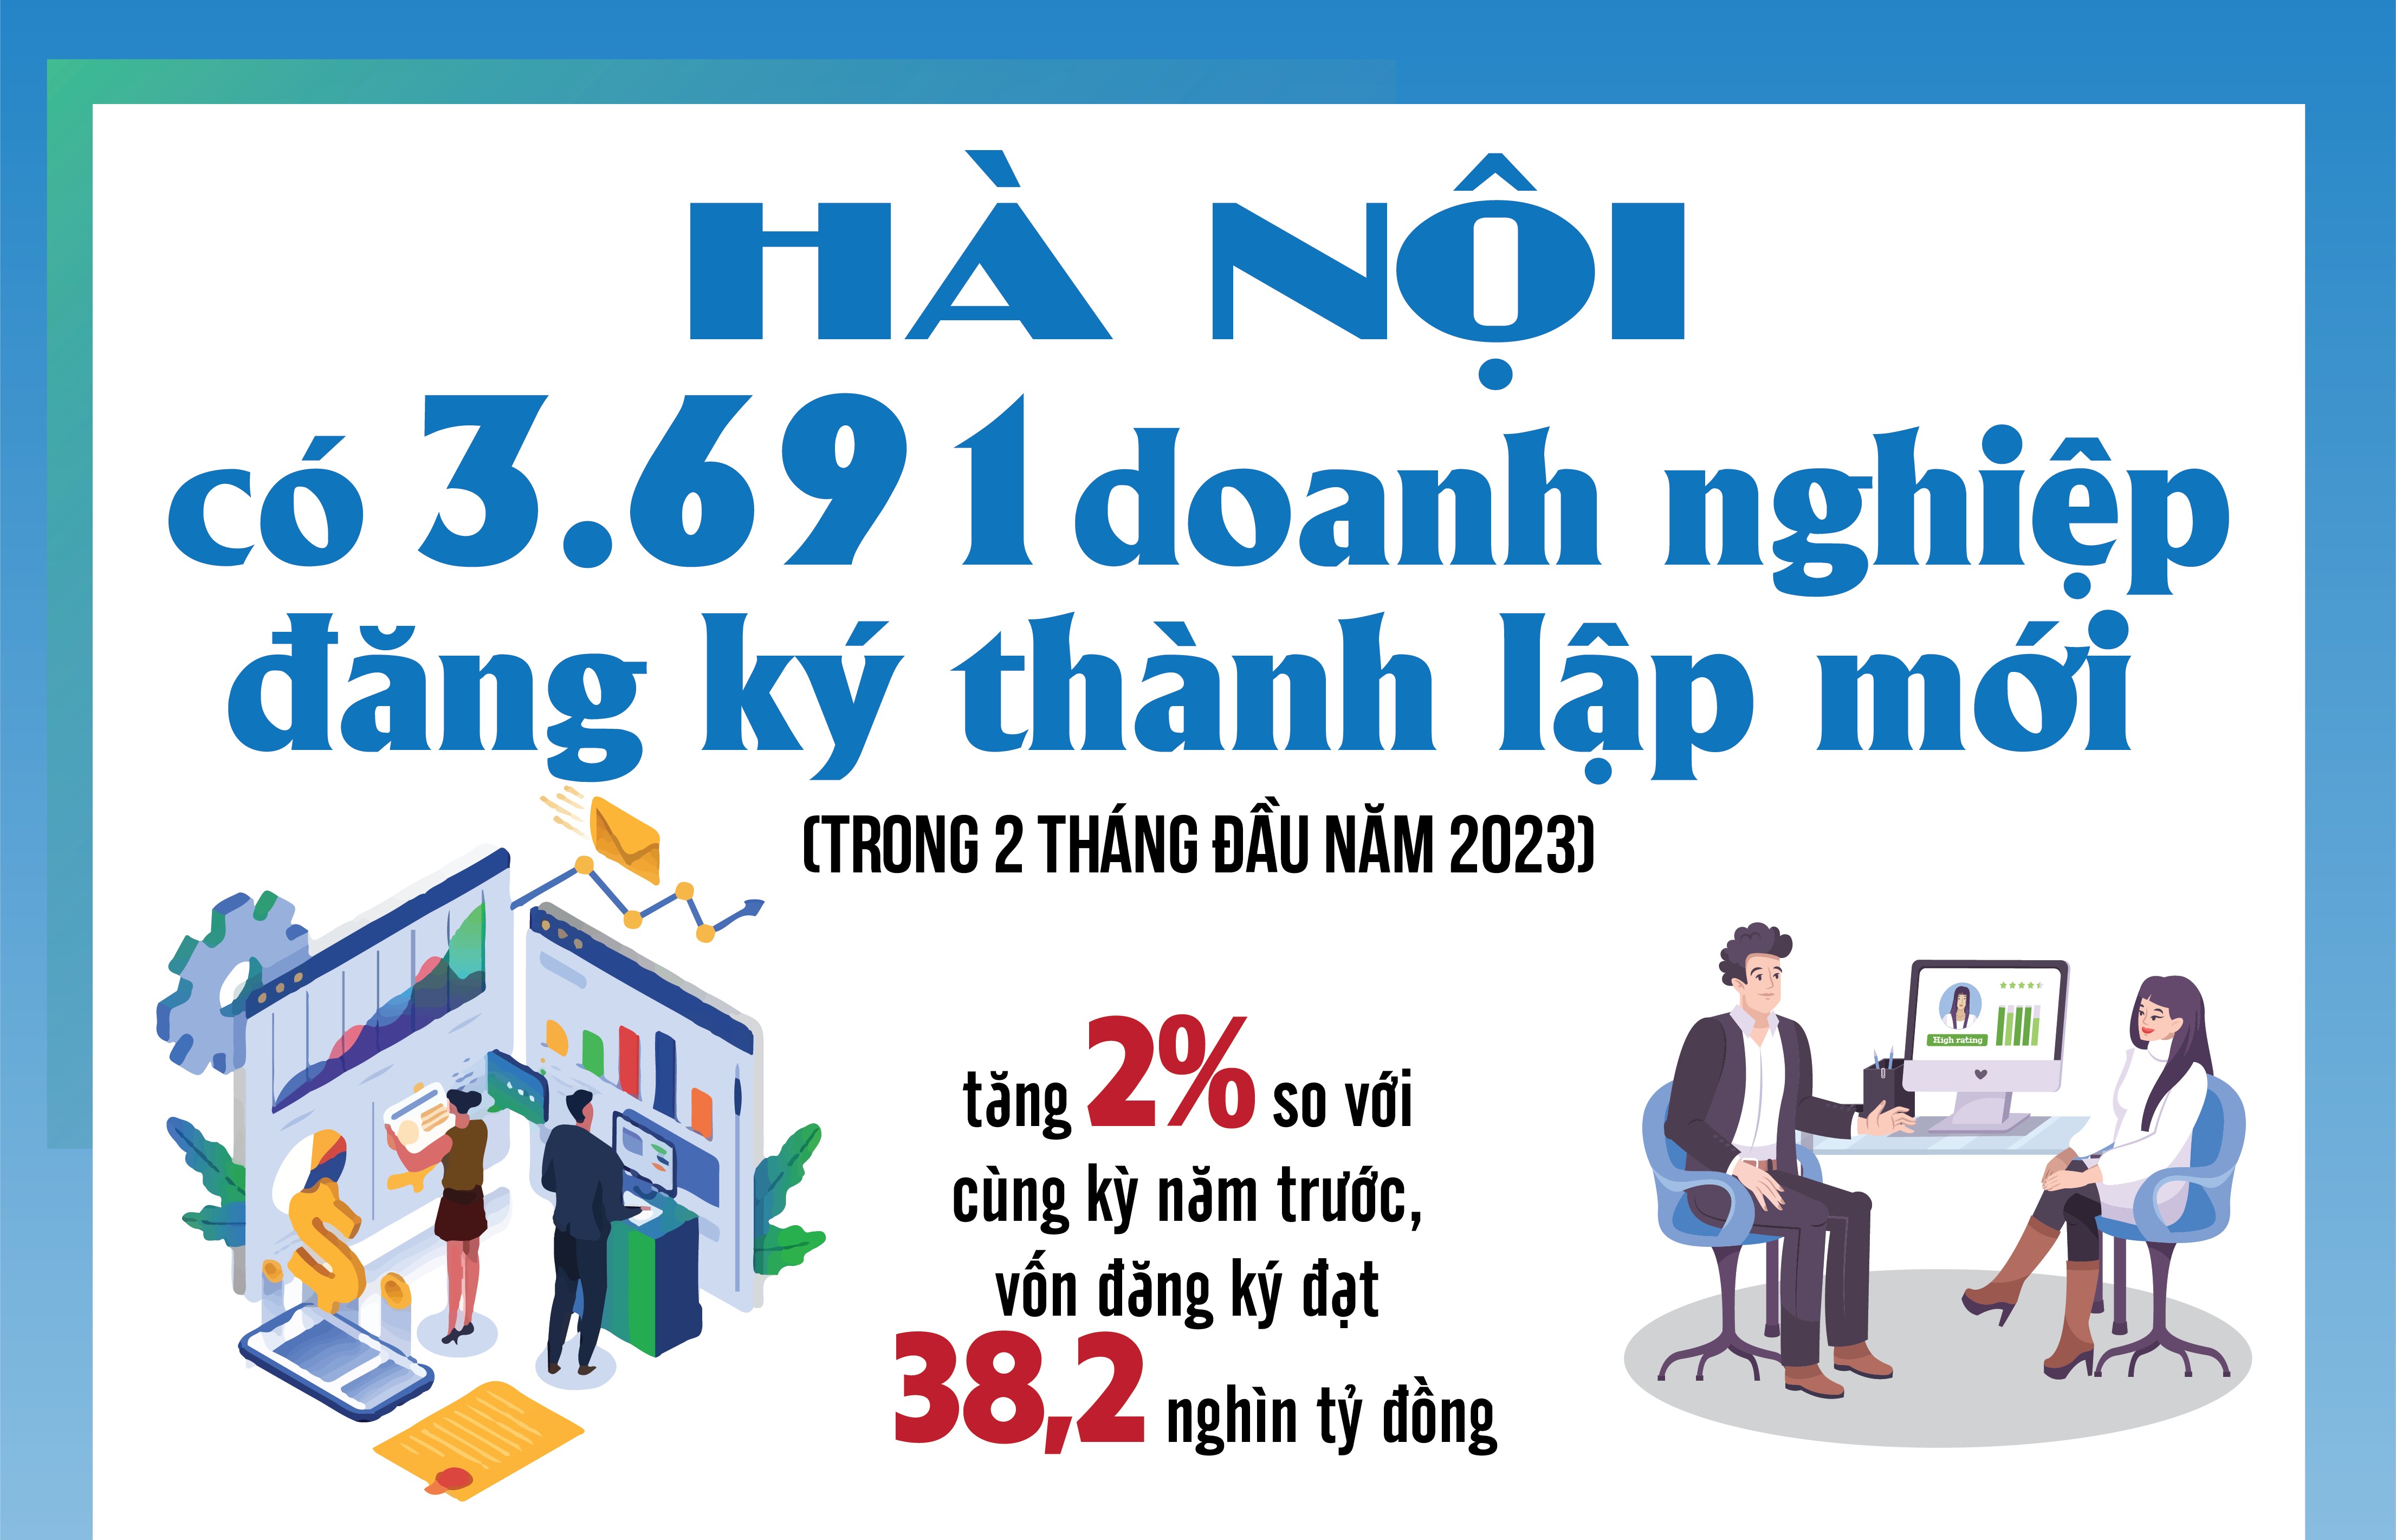 Hà Nội có 3.691 doanh nghiệp đăng ký thành lập mới trong 2 tháng đầu năm 2023